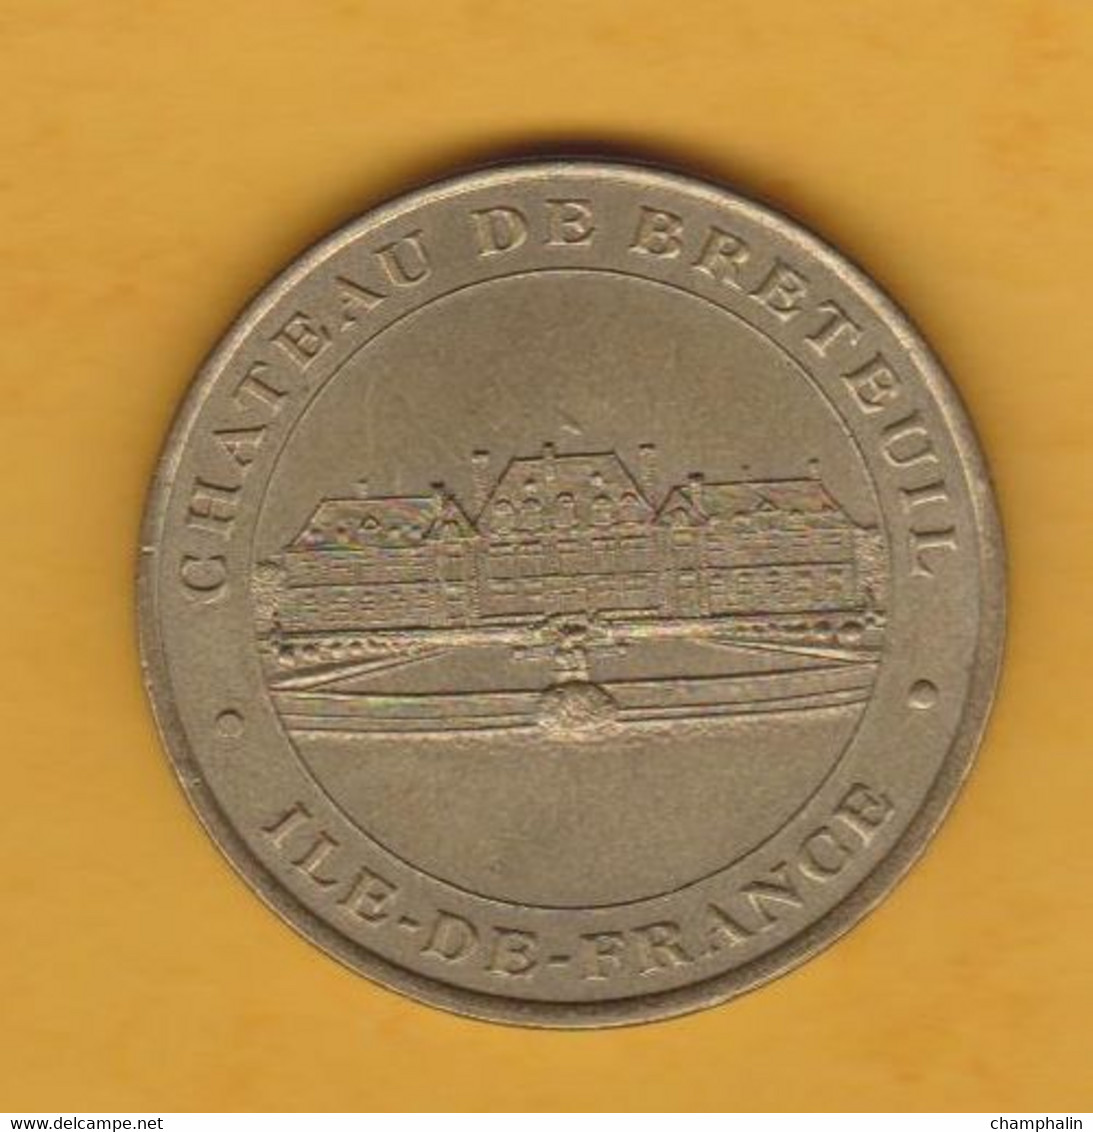 France - Jeton Touristique Monnaie De Paris - Château De Breteuil - 2002 - Ile De France - Choisel (78) - 2002